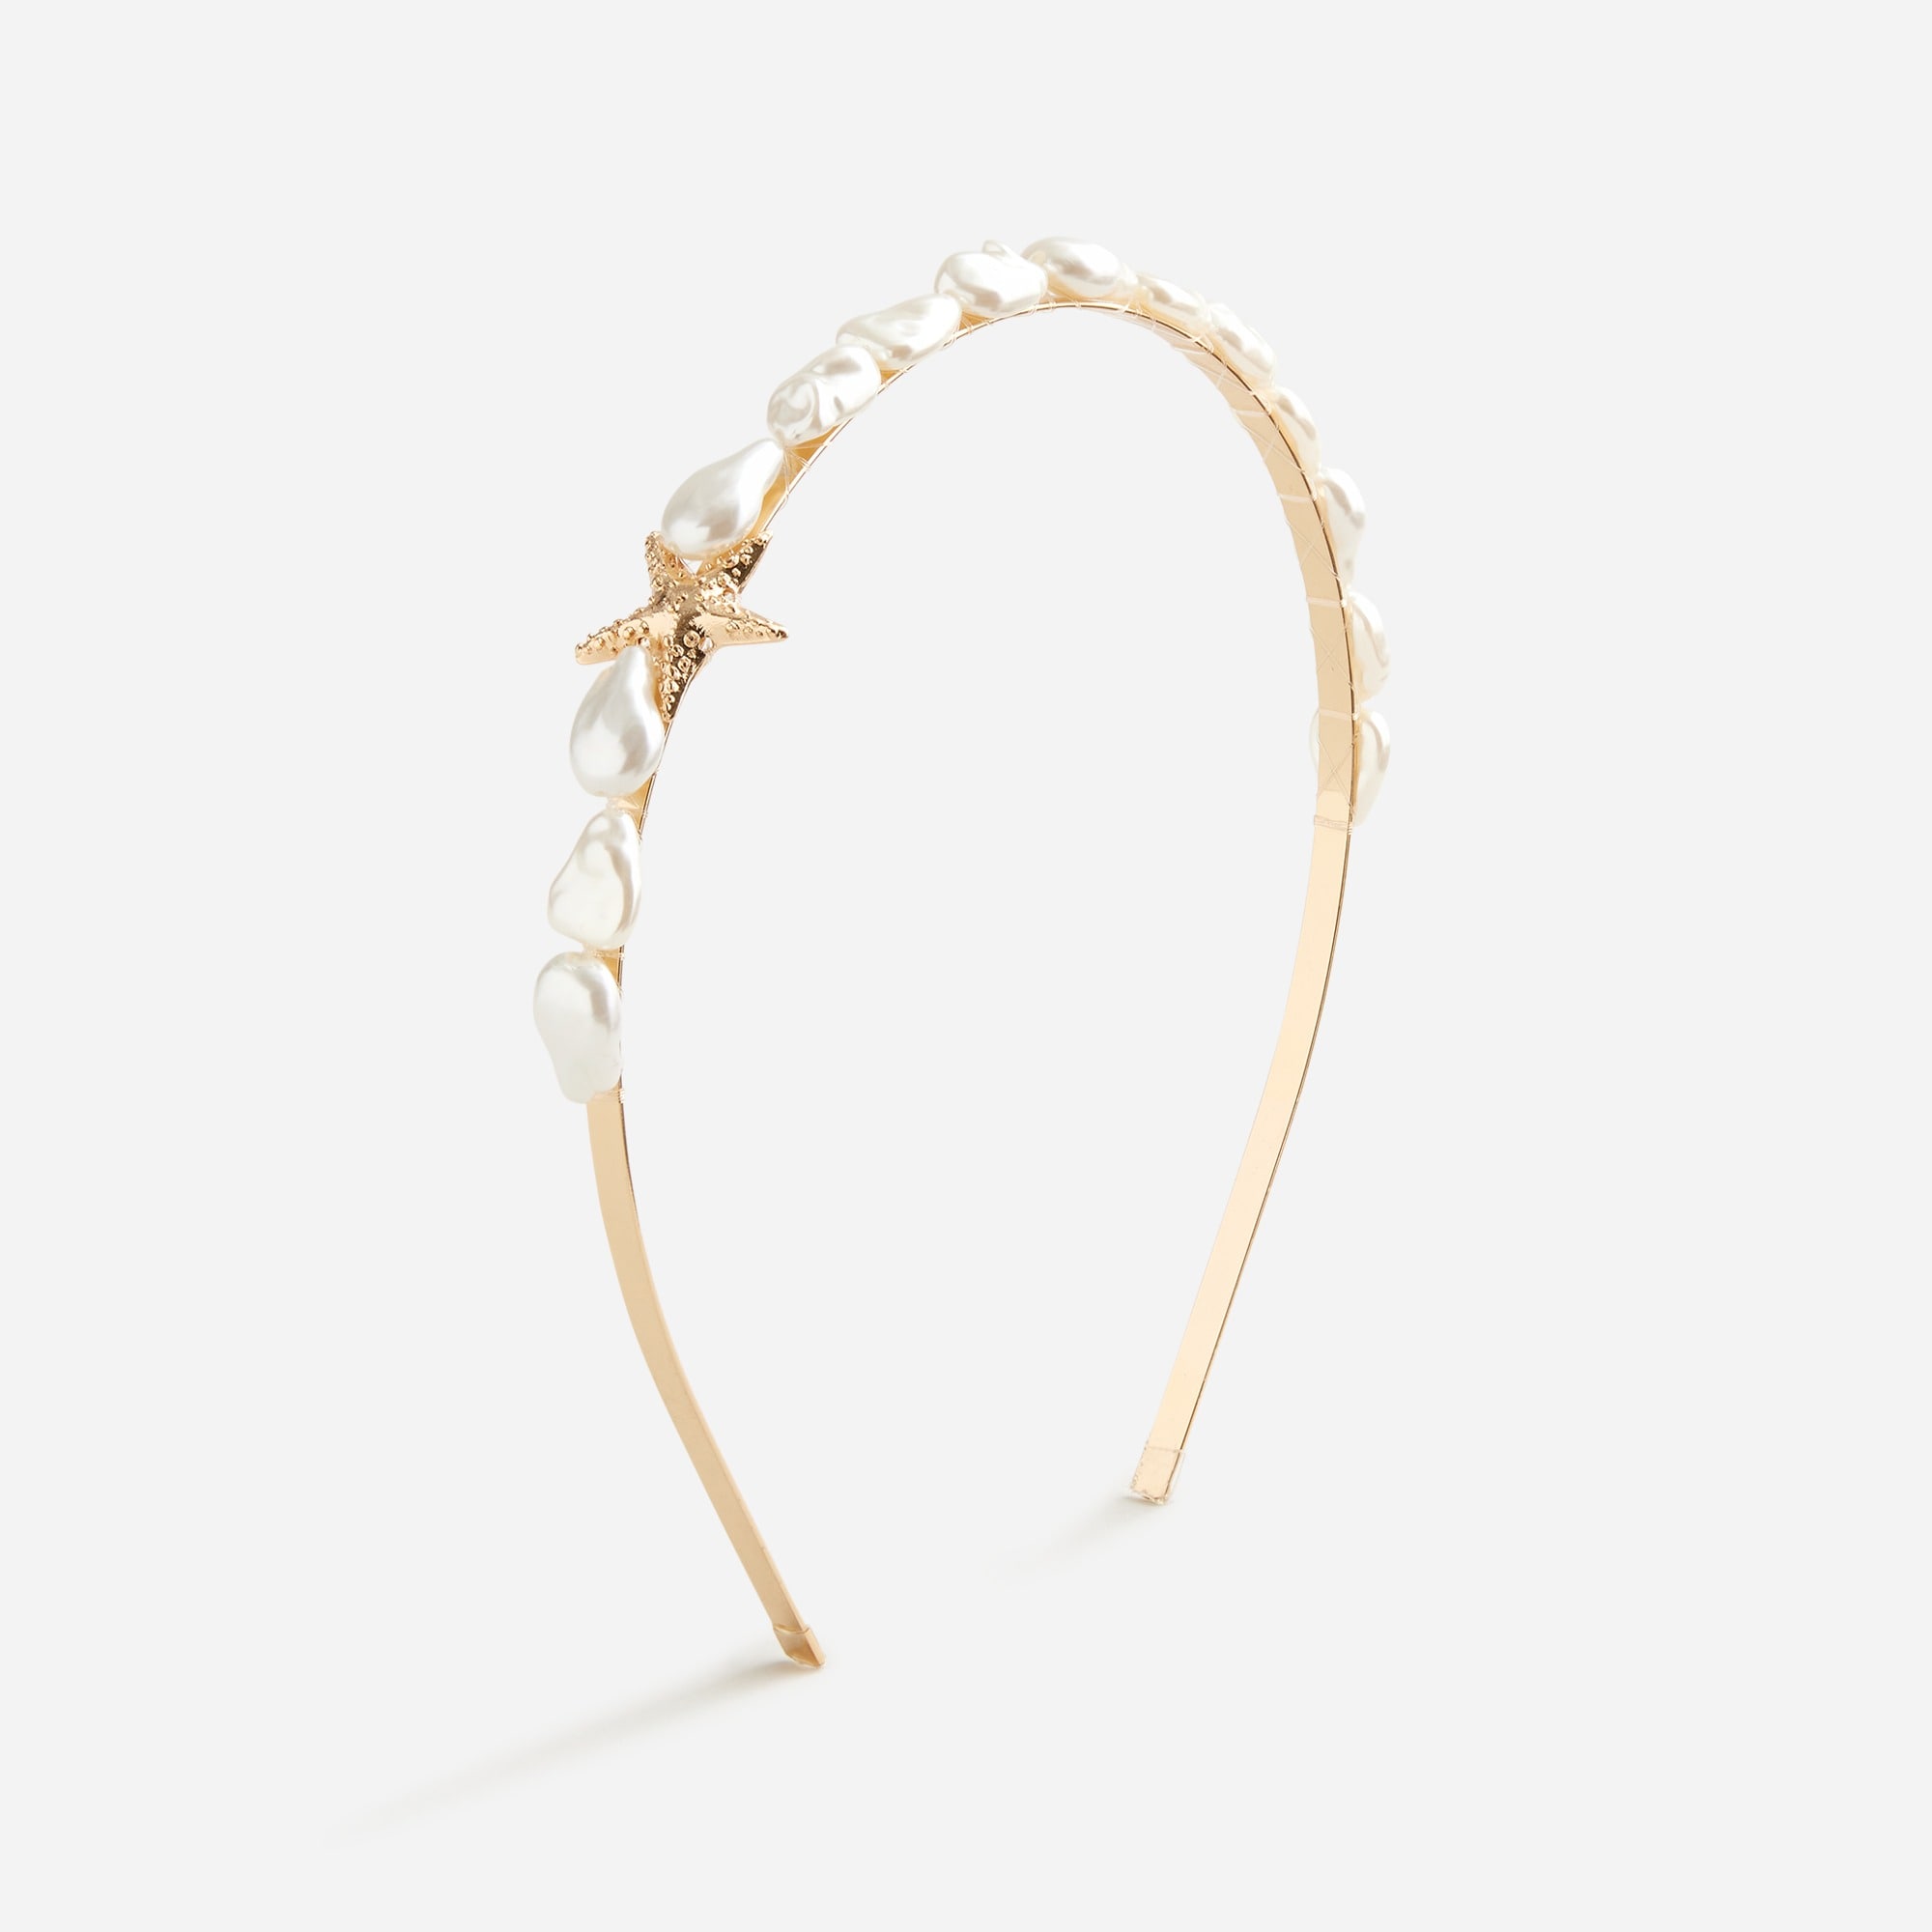  Girls' skinny pearl and starfish headband